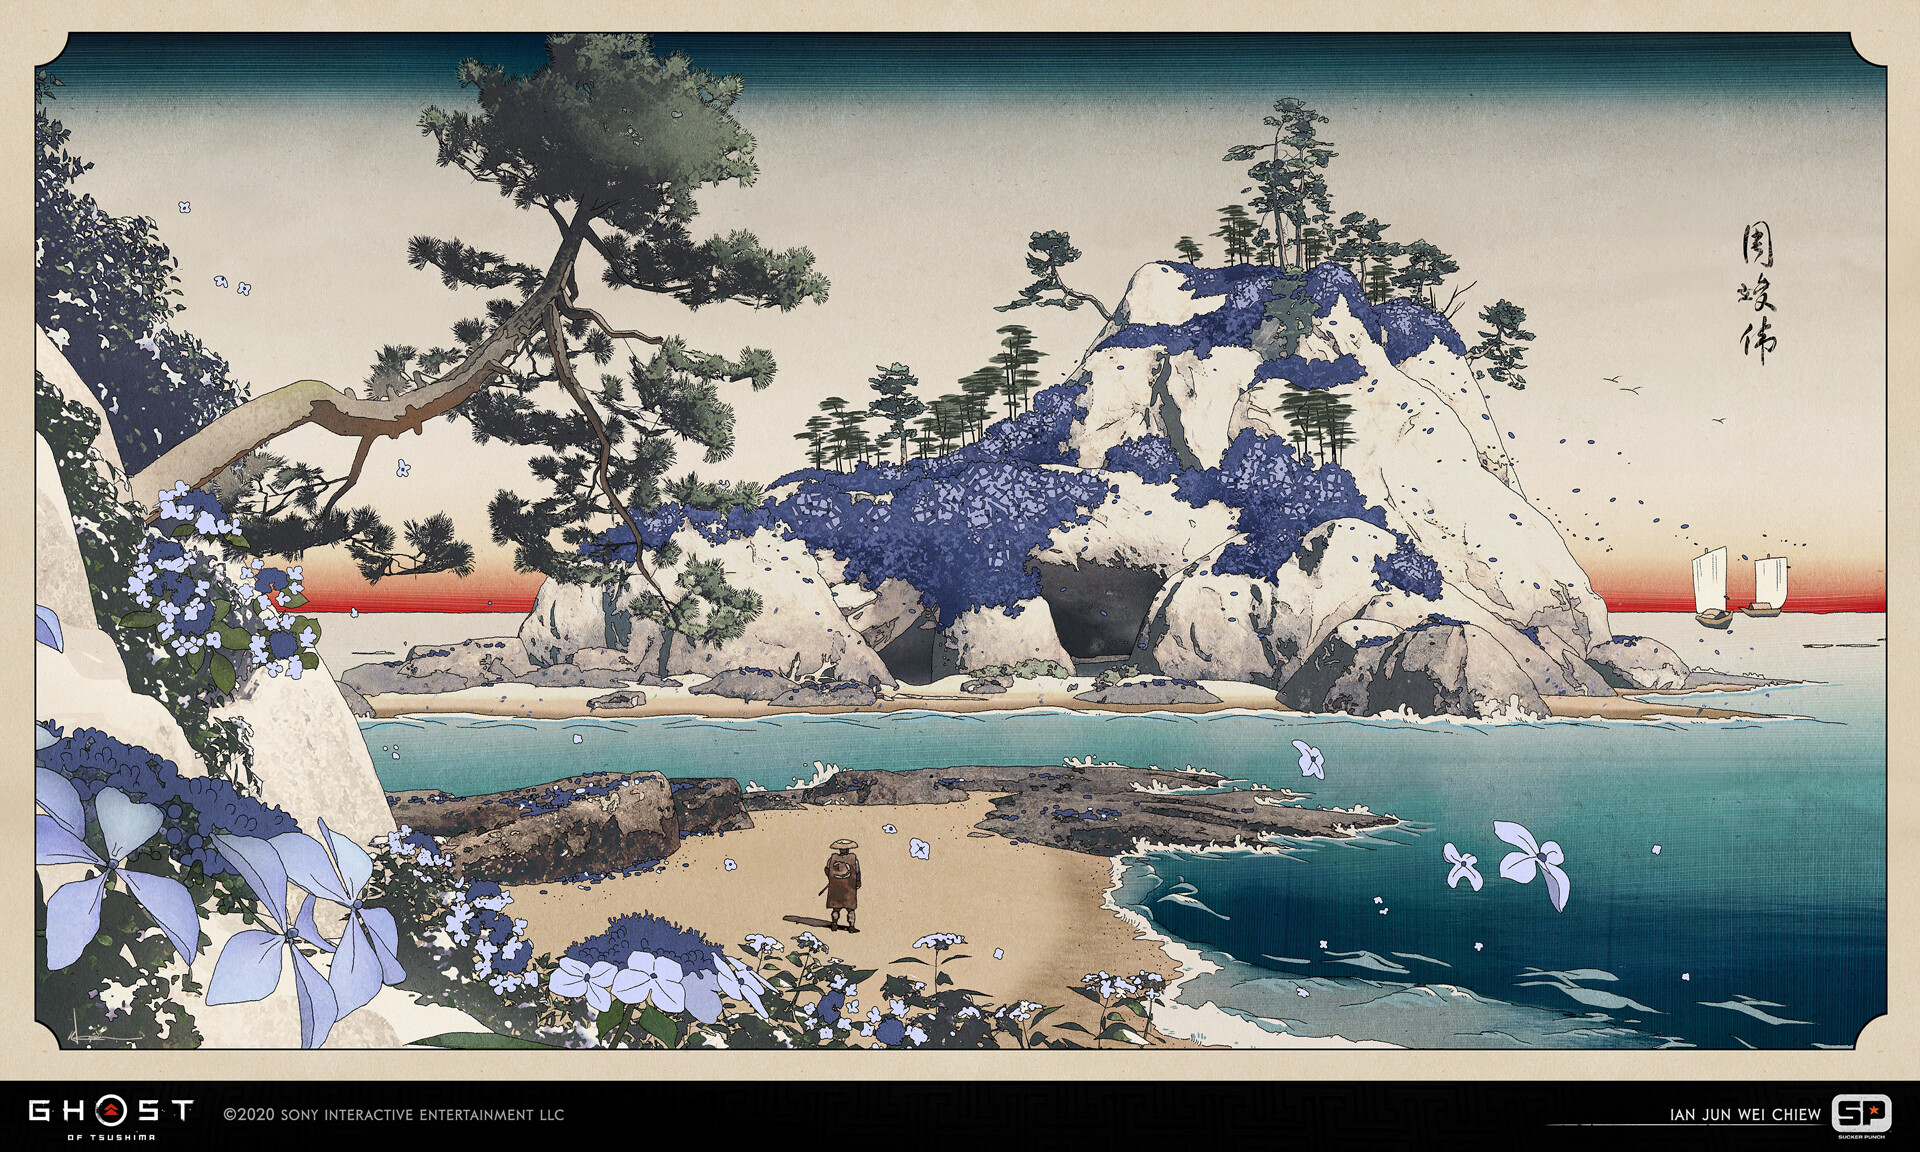 《对马岛之鬼》百余张概念原画赏析 再现古代日本风貌